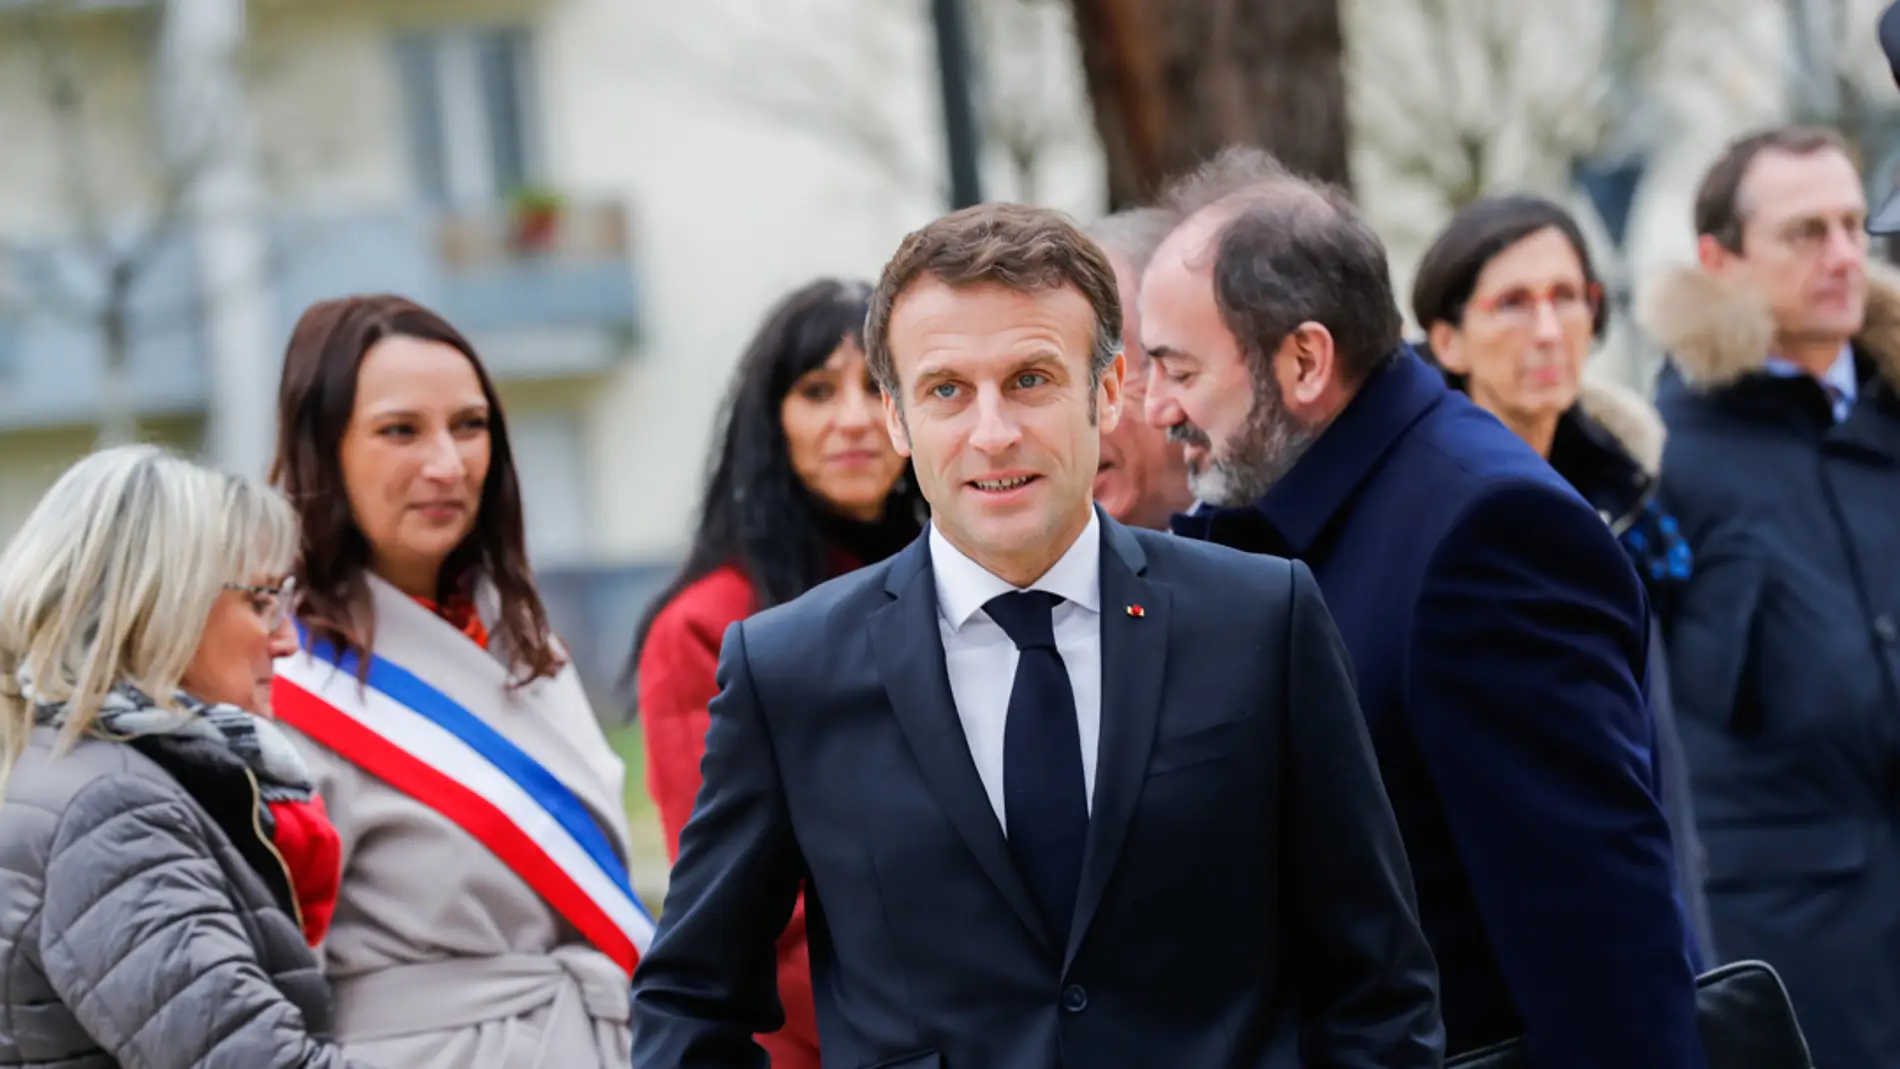 Macron dará preservativos gratis a jóvenes entre 18 y 15 años a partir de 2023